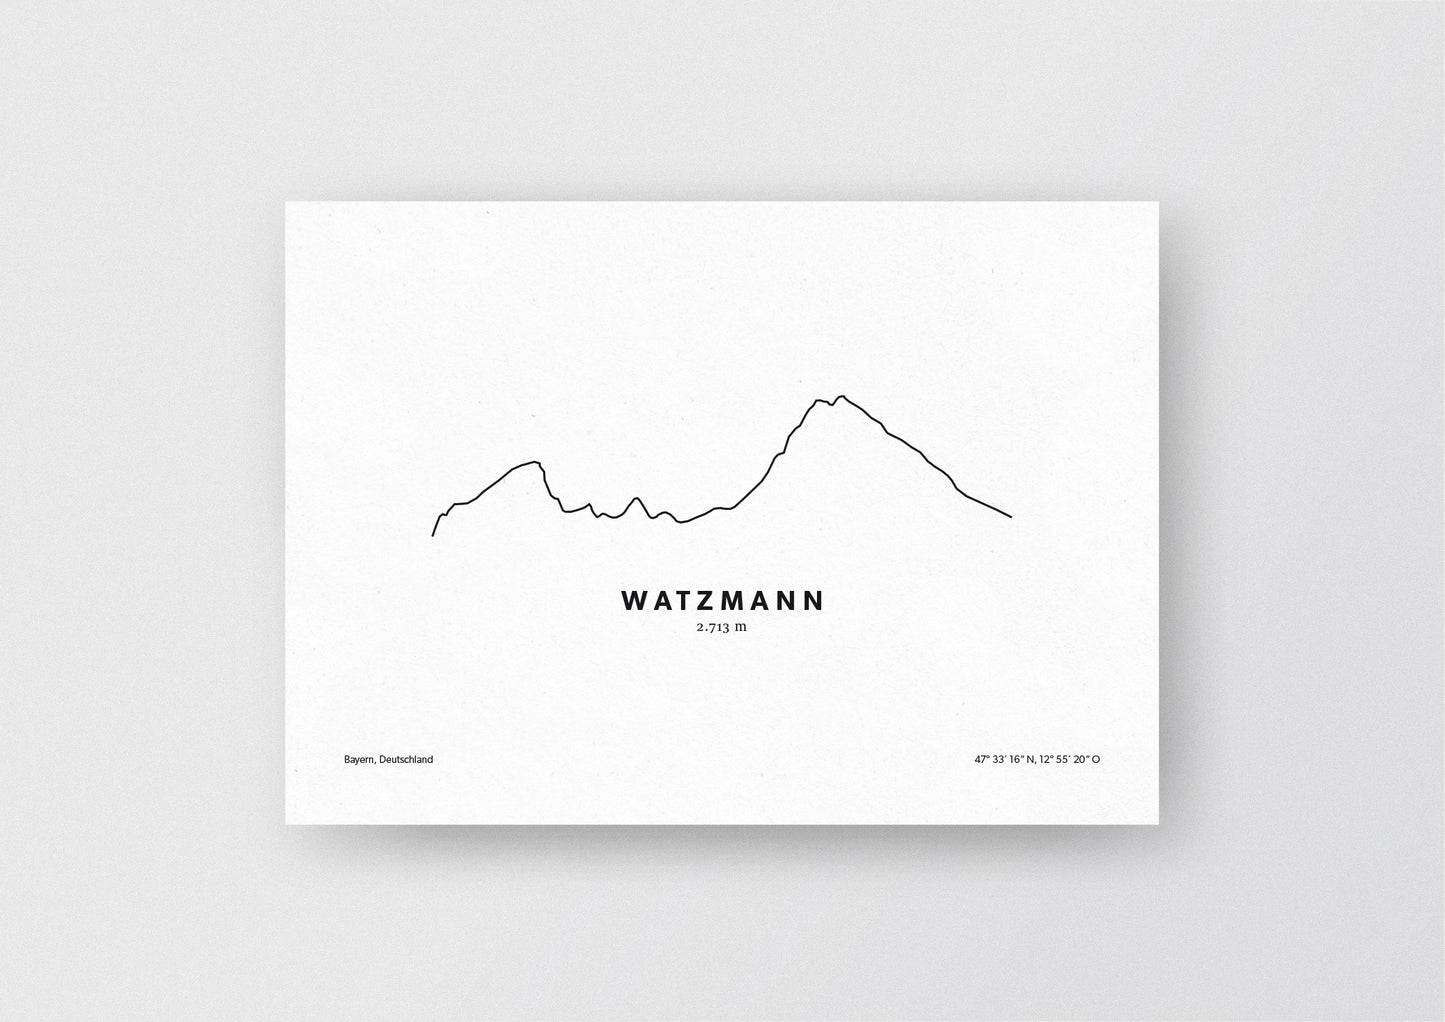 Minimalistische Illustration des Watzmann in den Berchtesgadener Alpen, als stilvoller Einrichtungsgegenstand für Zuhause.